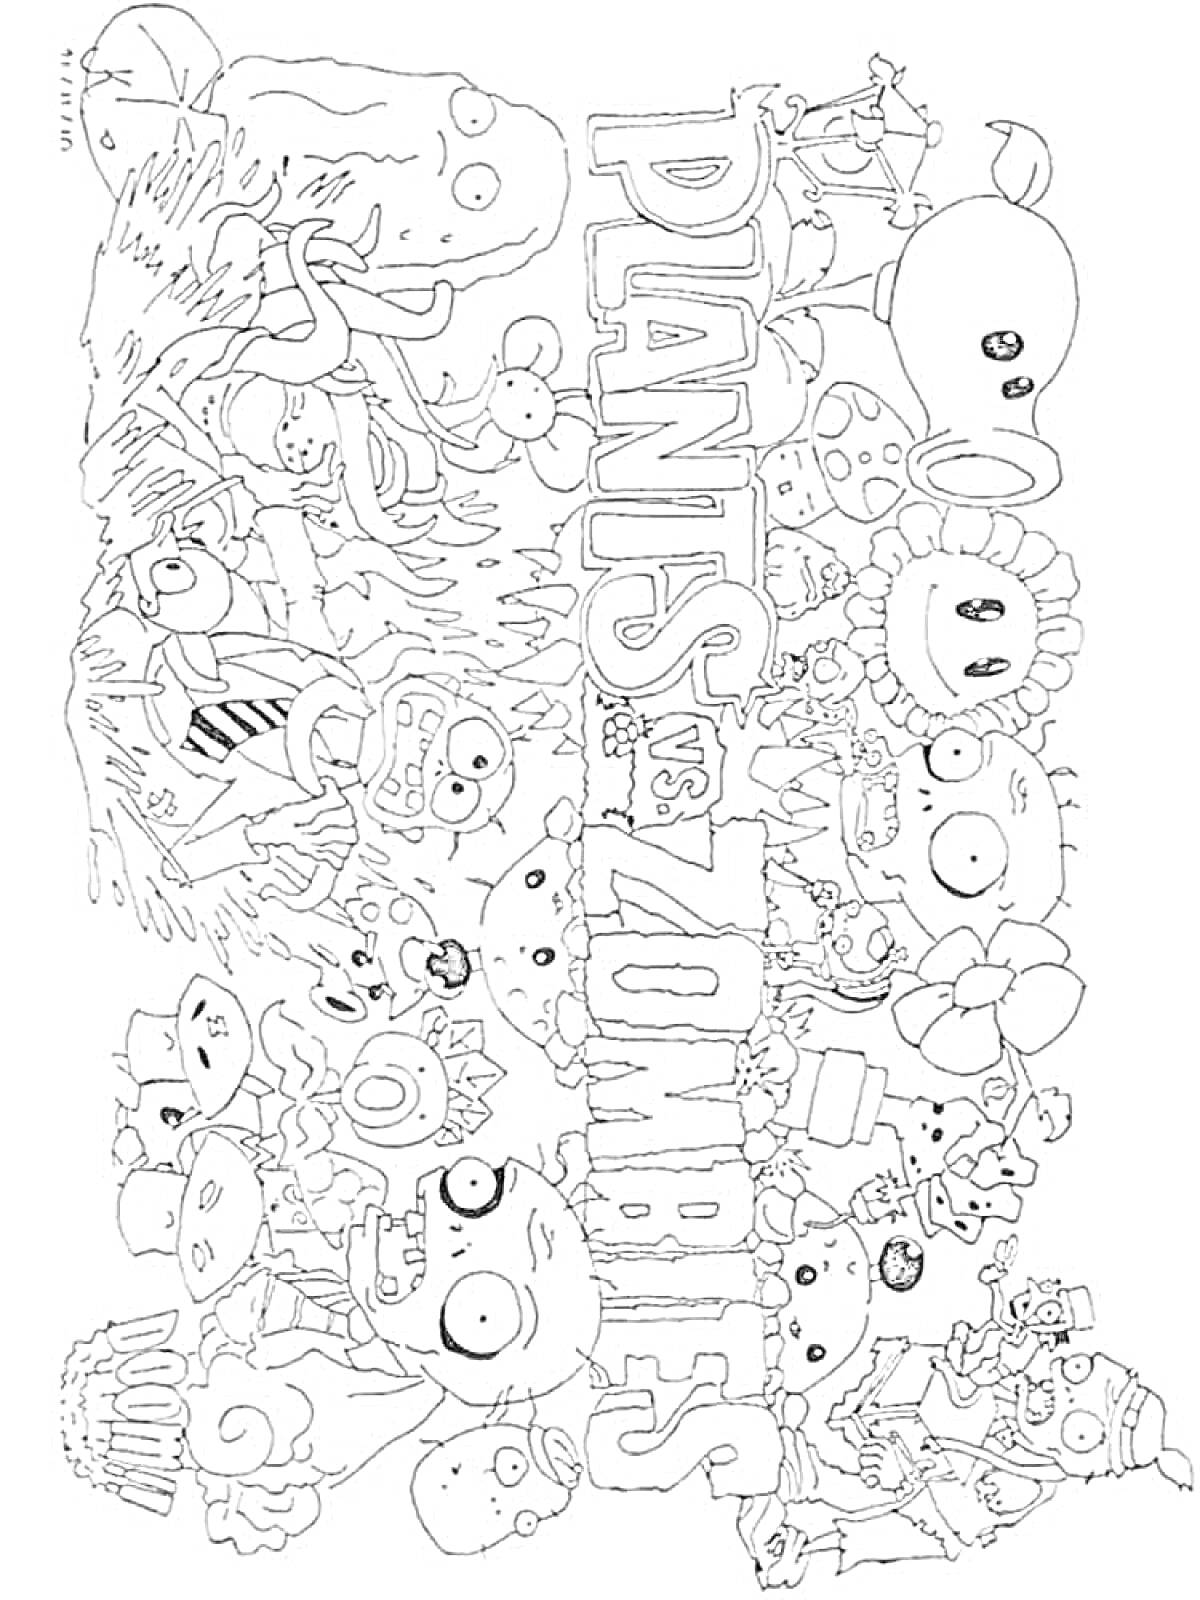 Раскраска Зомби против растений с различными растениями и зомби, логотип в центре